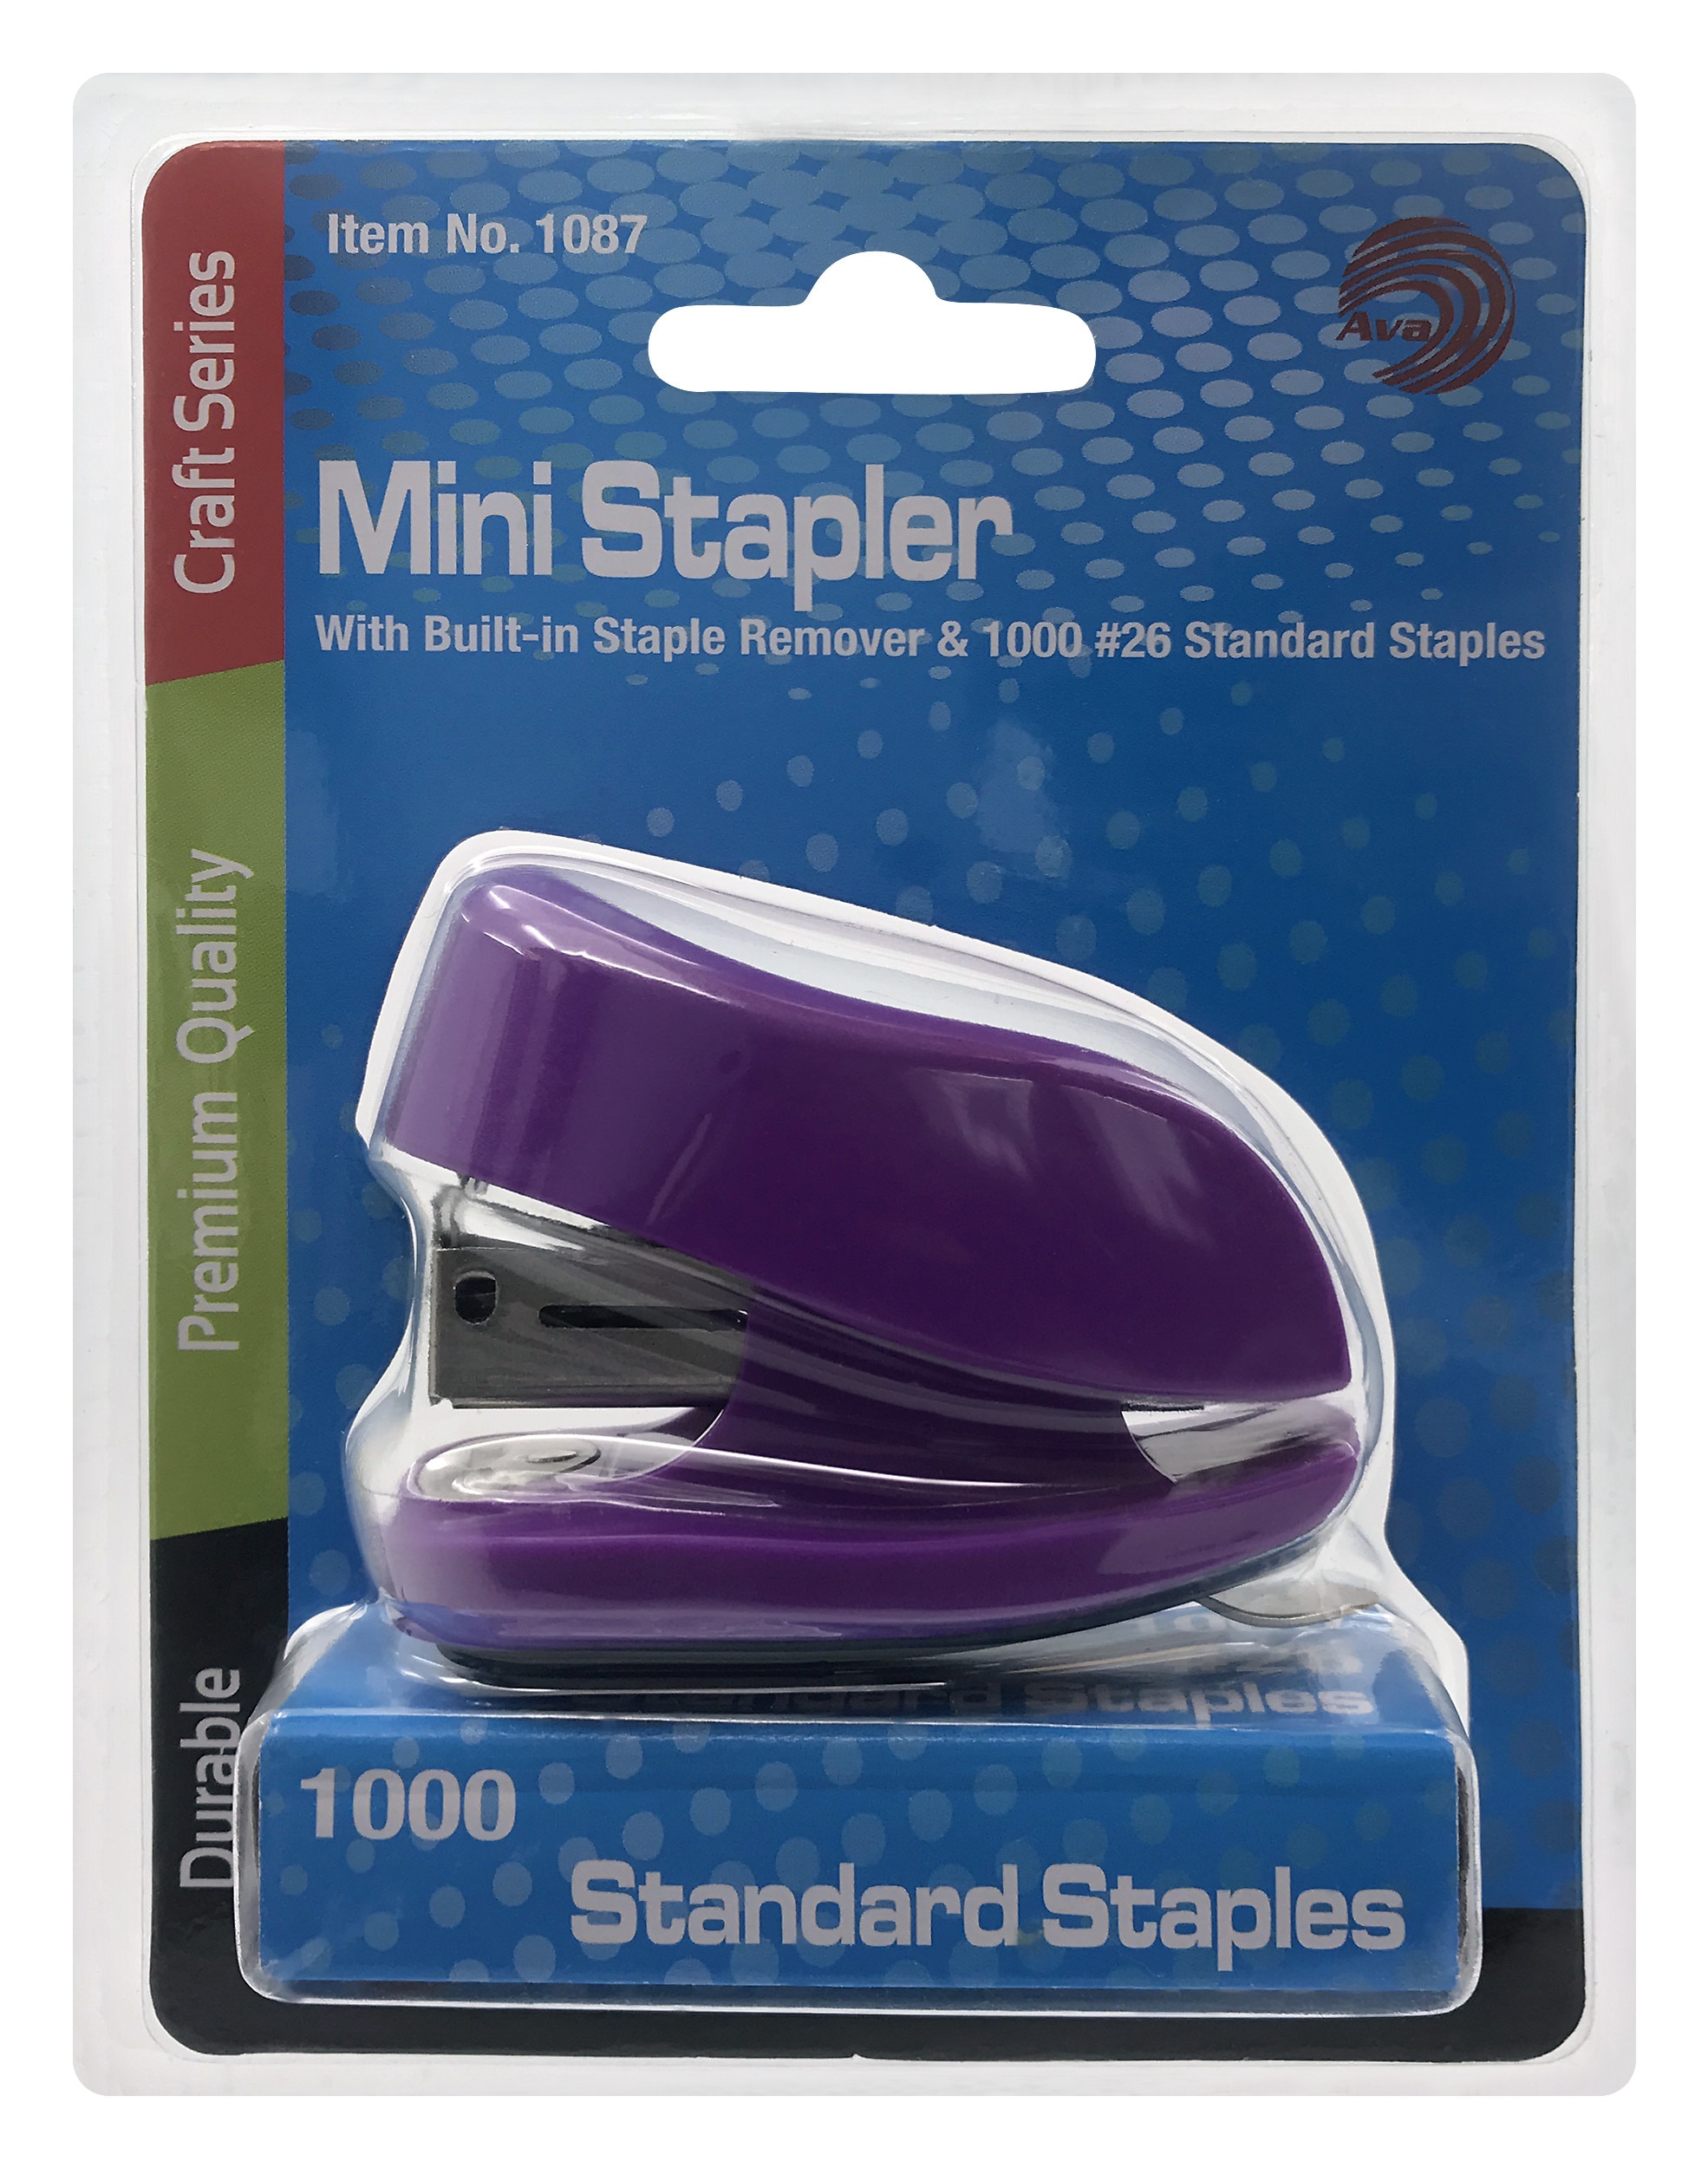 Avantix Mini Stapler with Builtin Staple Remover & 1000 Standard Staples Set